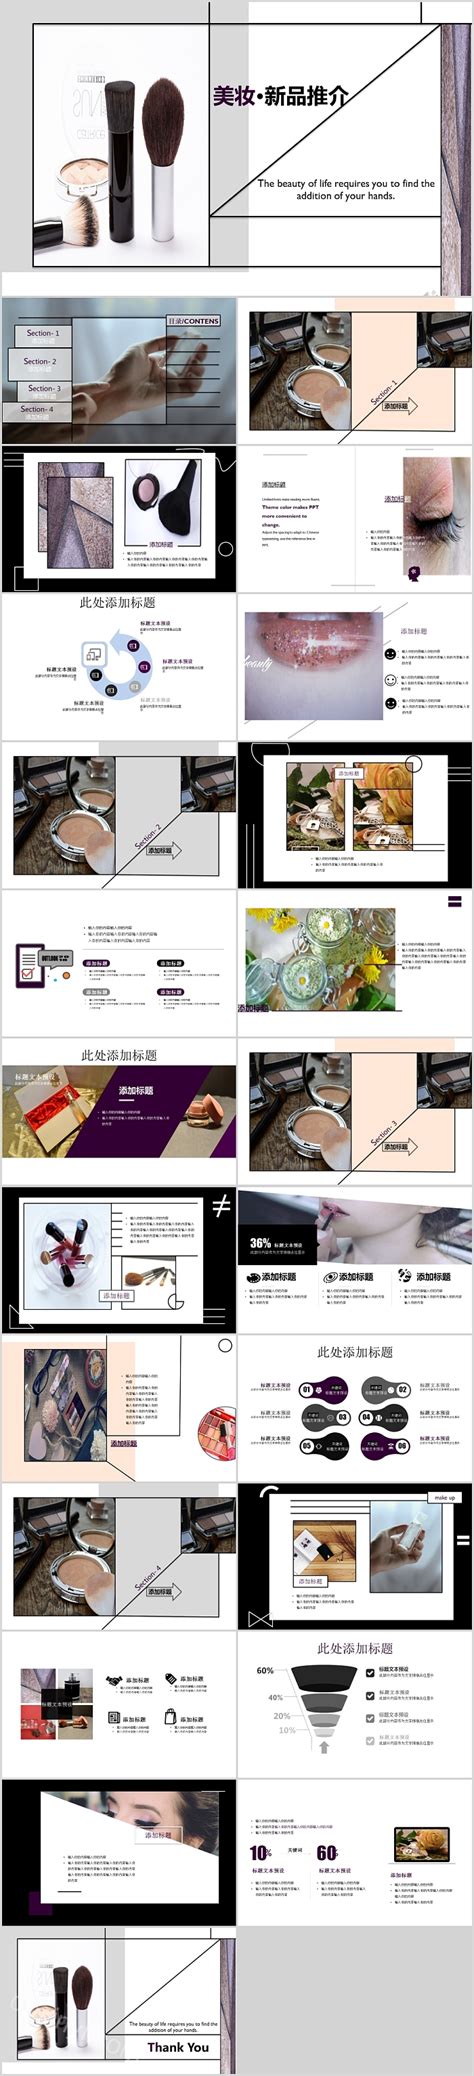 美妆新品推介美容产品宣传画册PPT-PPT模板-心宜办公